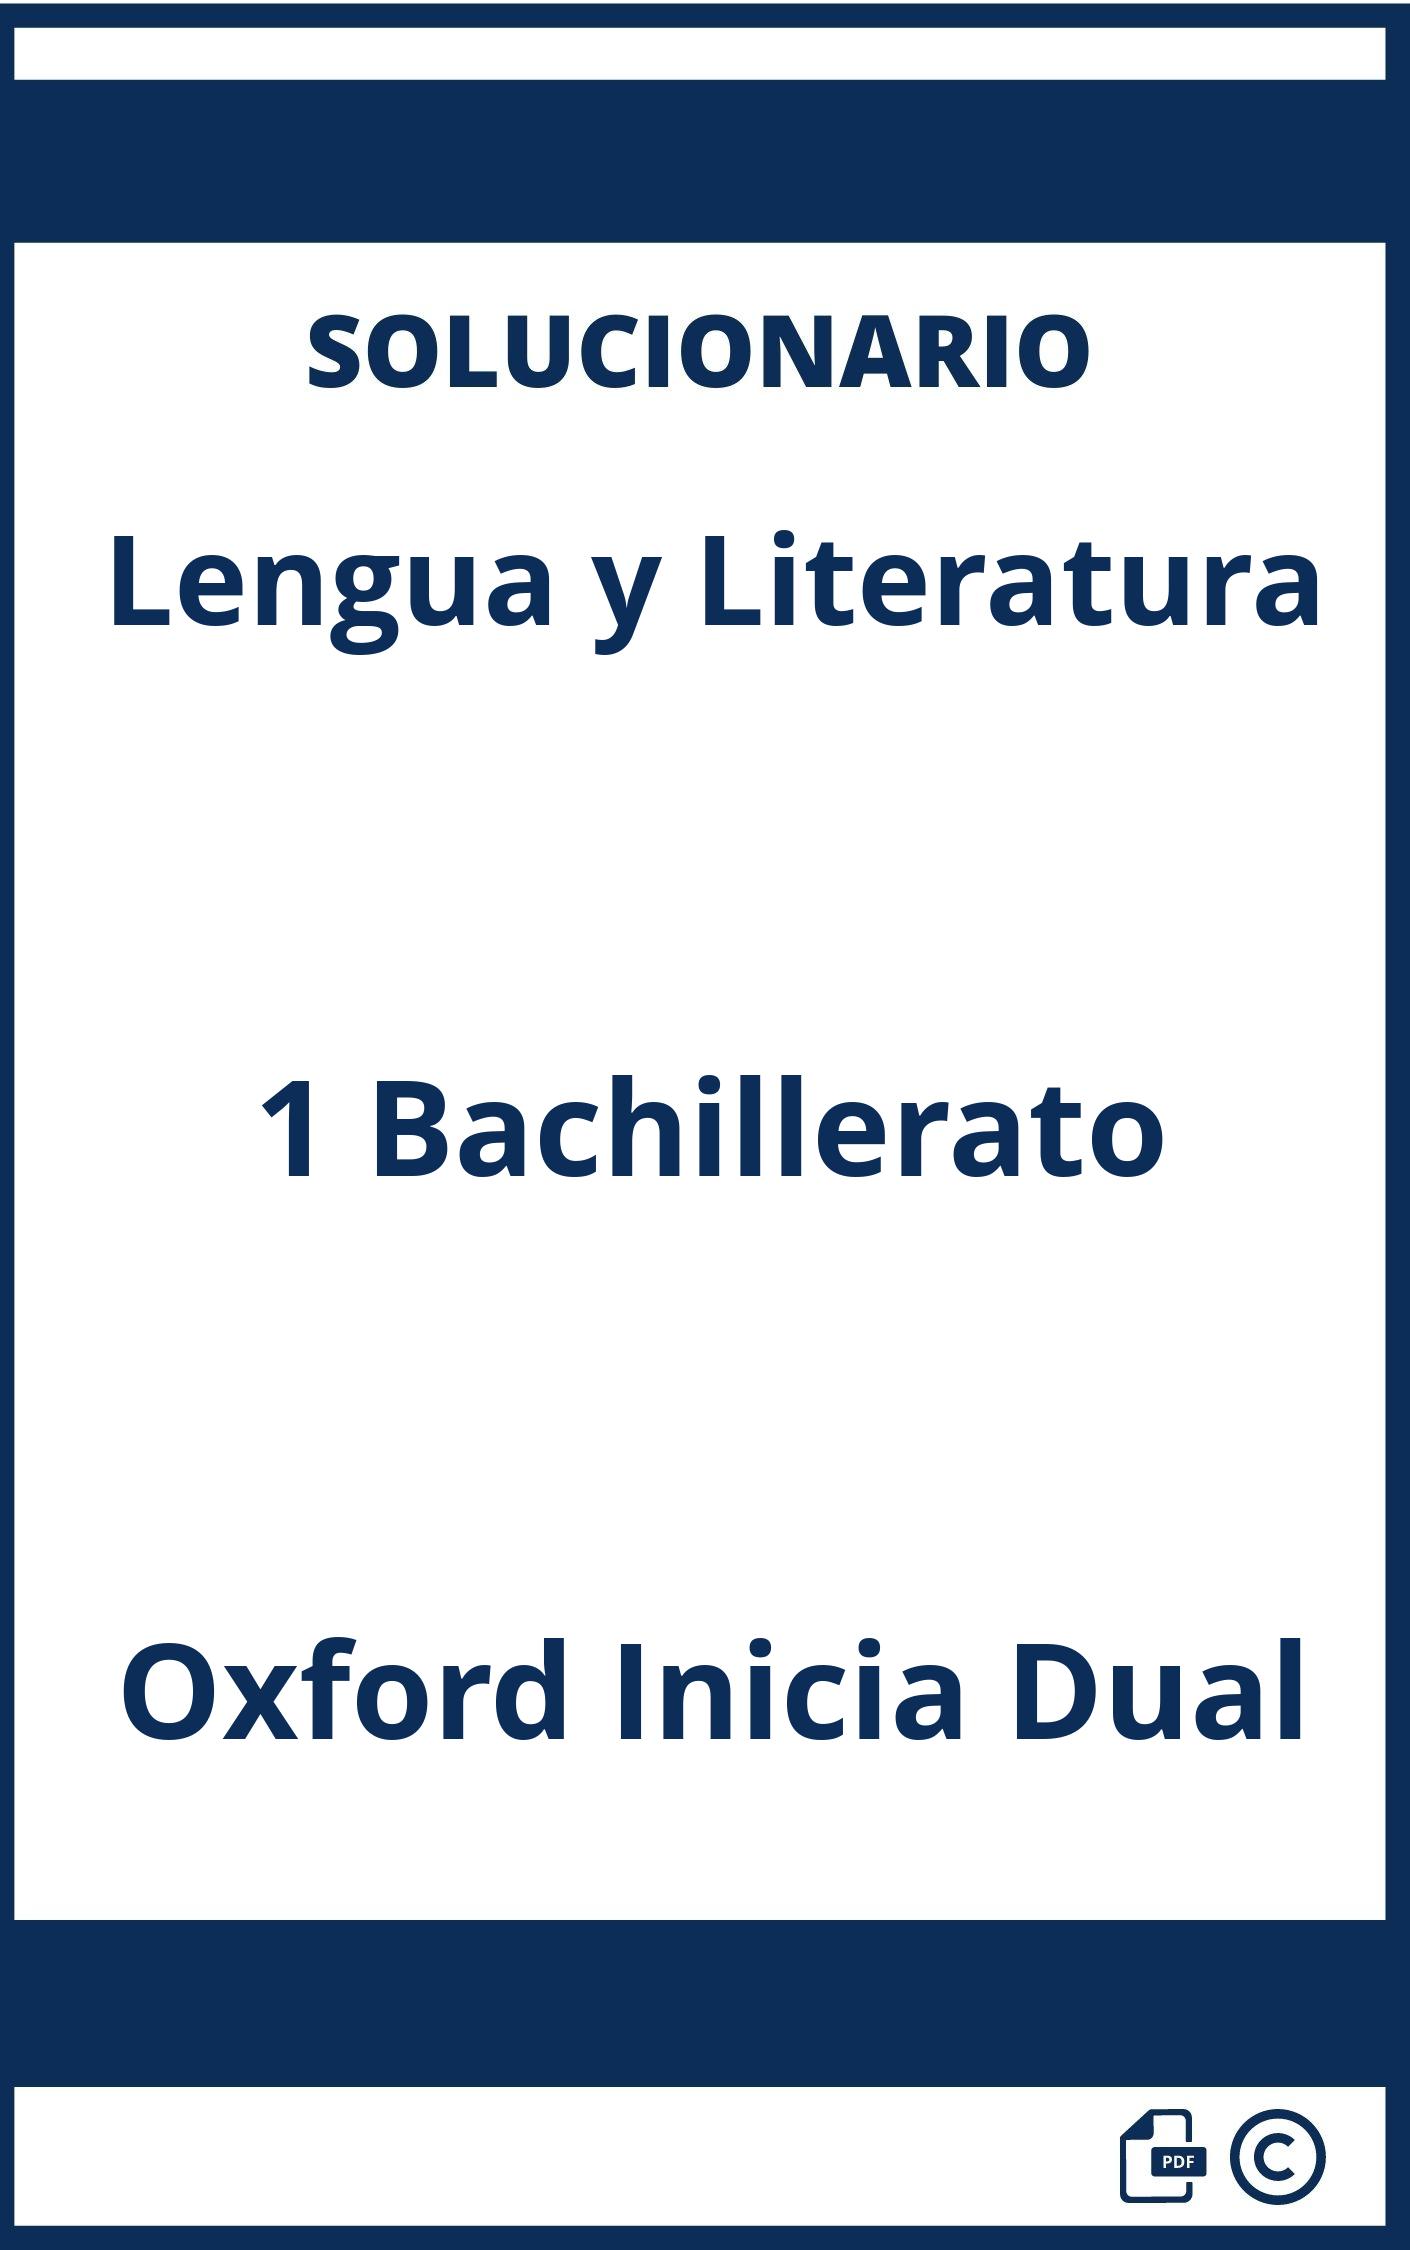 Solucionario Lengua y Literatura 1 Bachillerato Oxford Inicia Dual